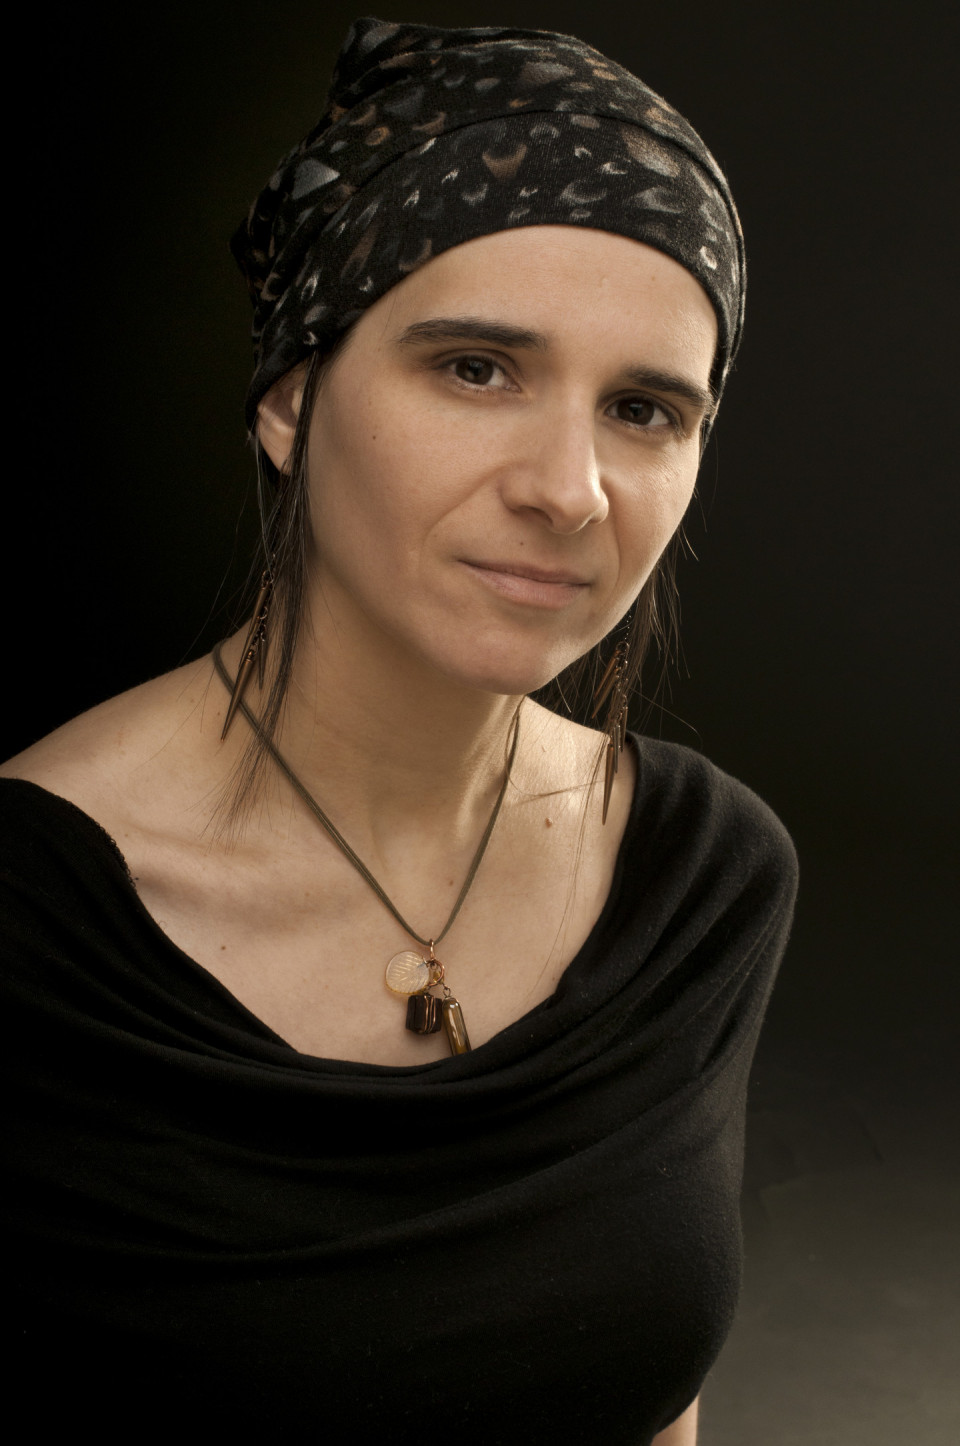 Marie-Hélène Breault [Photograph: Danielle Giguère, 2014]